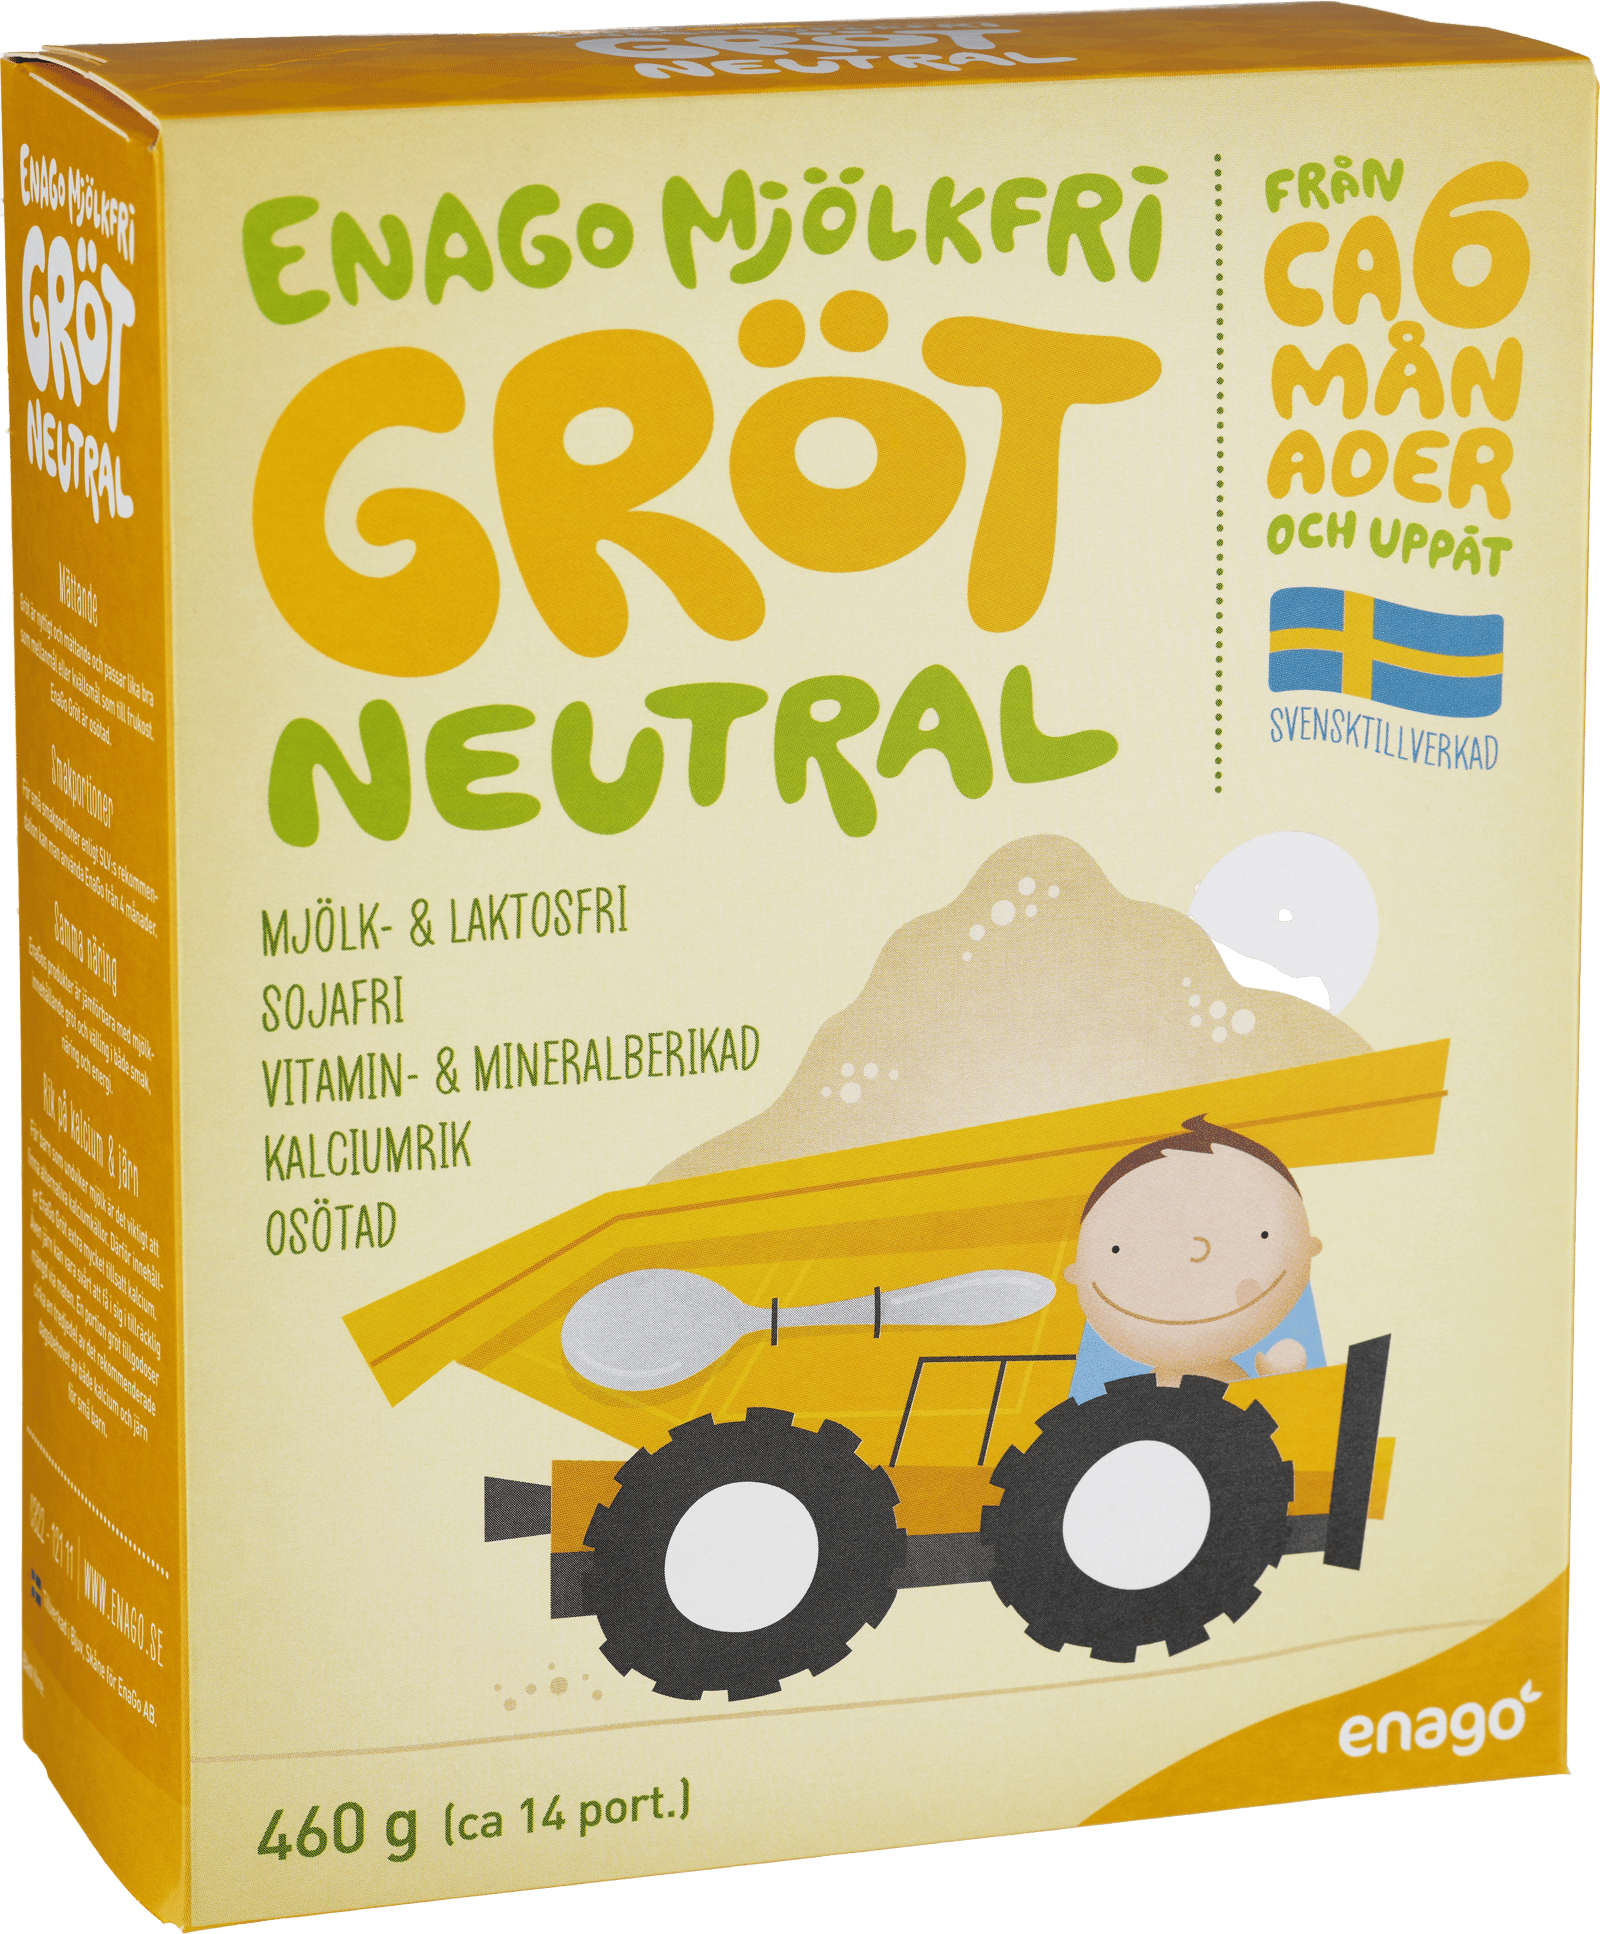 EnaGo Mjölkfri Gröt Neutral 460 g